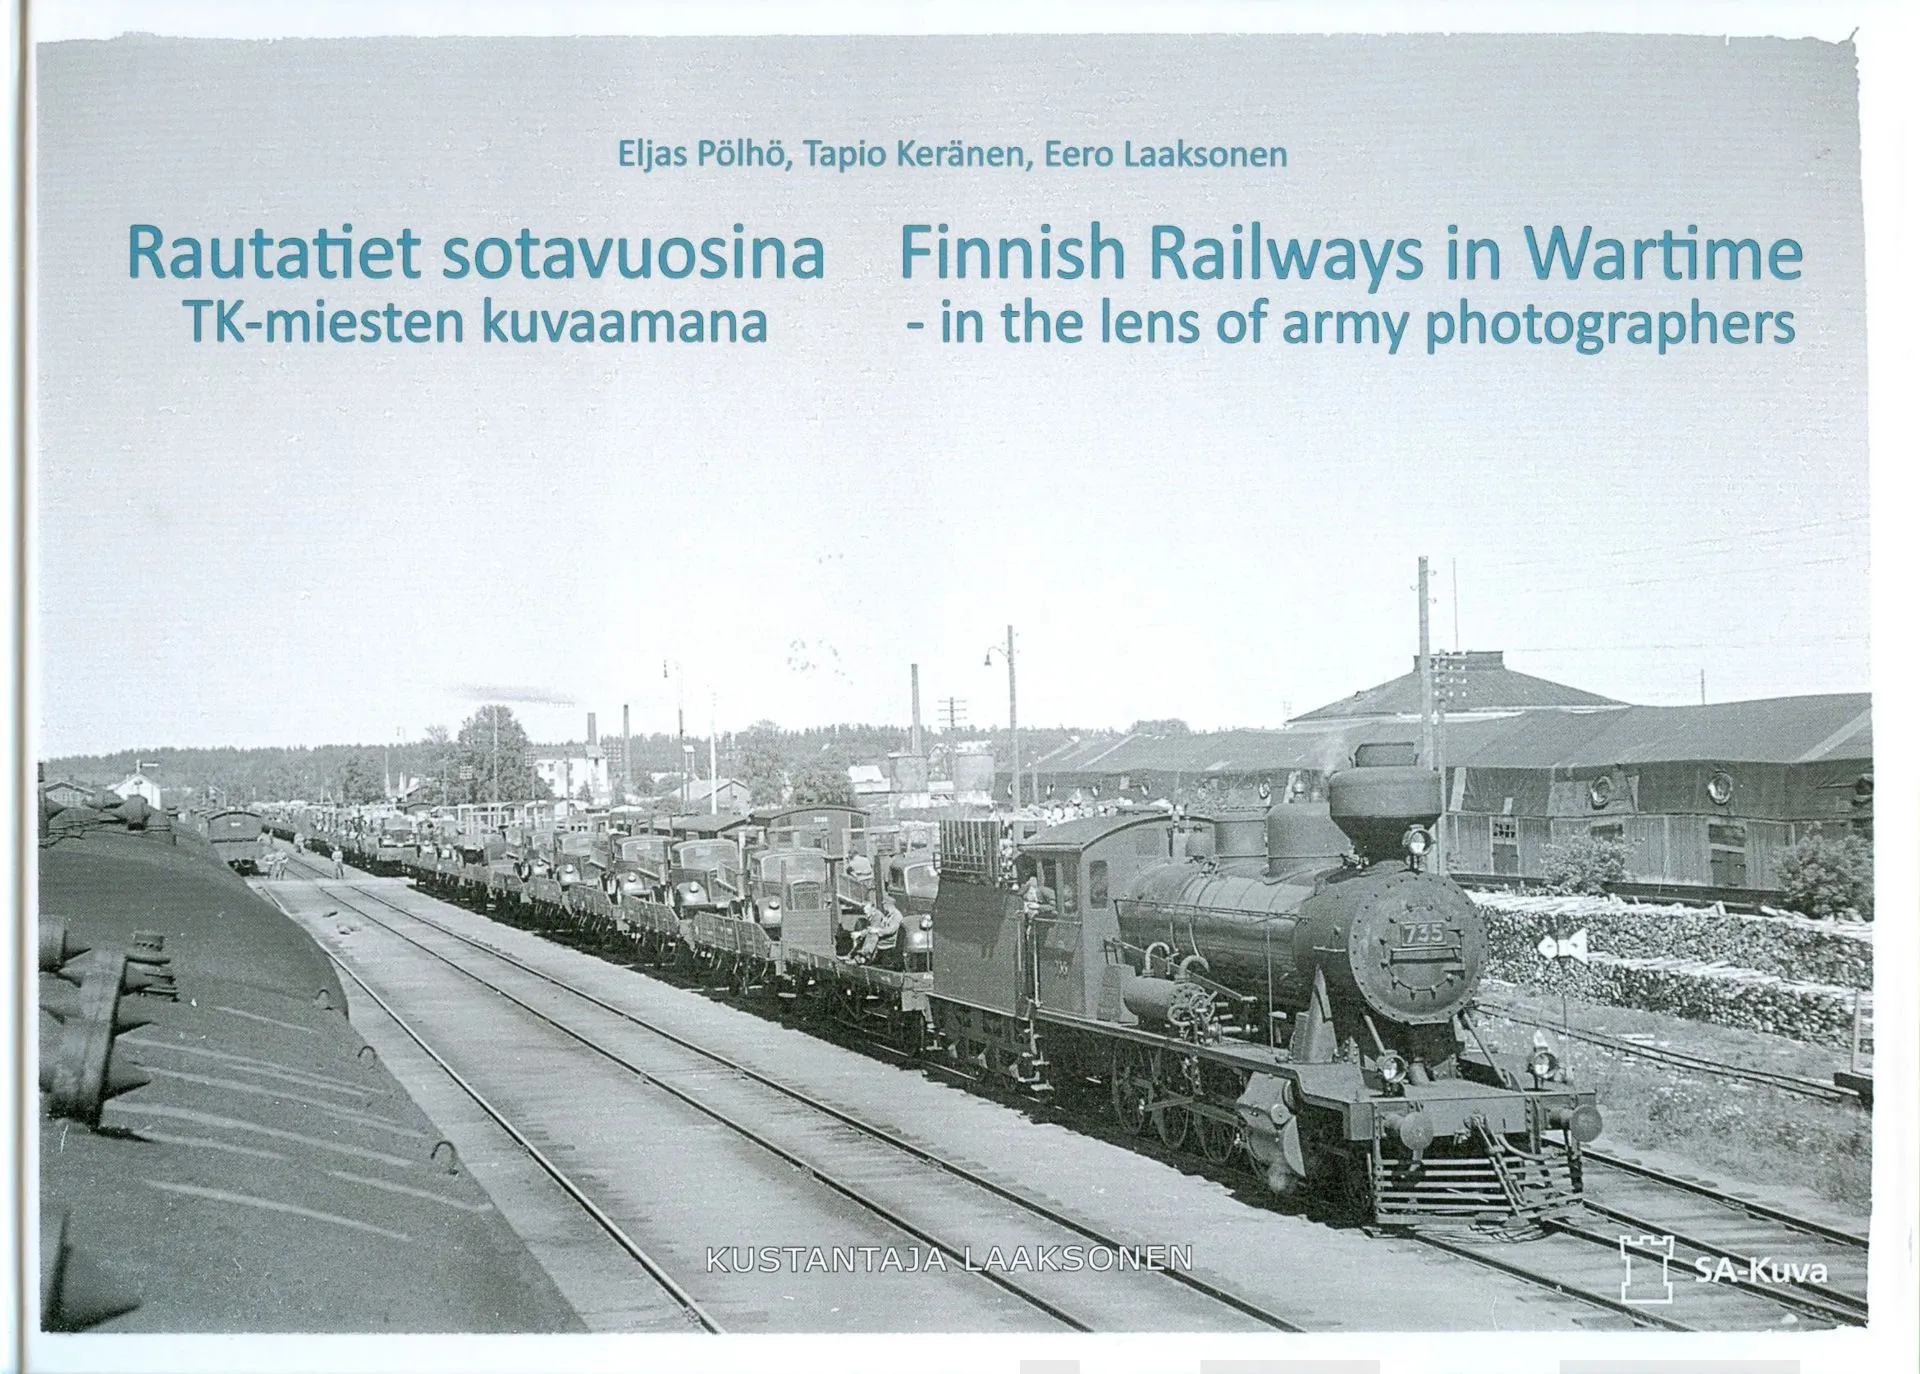 Pölhö, Rautatiet sotavuosina - Finnish Railways in Wartime - TK-miesten kuvaamana - in the lens of army photographers